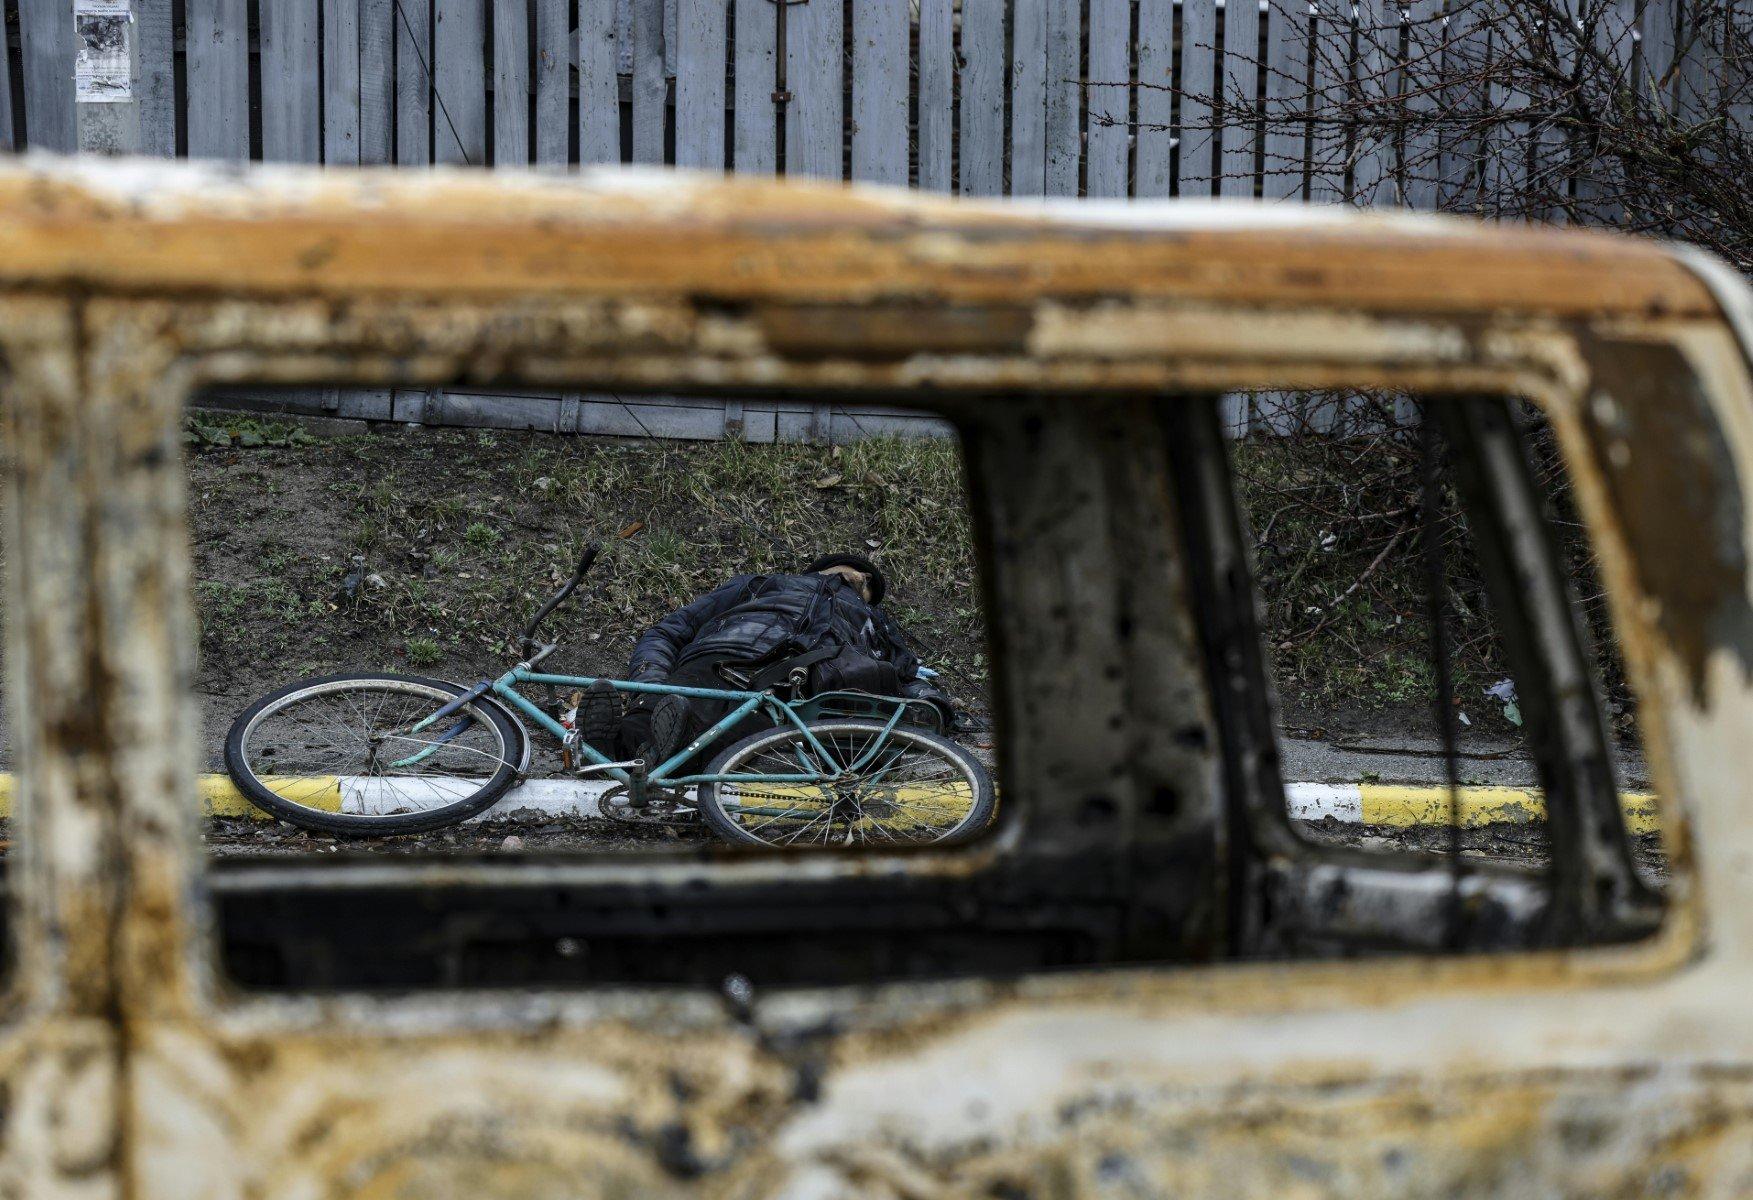 Przez okno spalonego samochody widac pobocze drogi i zabitego rowerzystę razem z jego rowerem